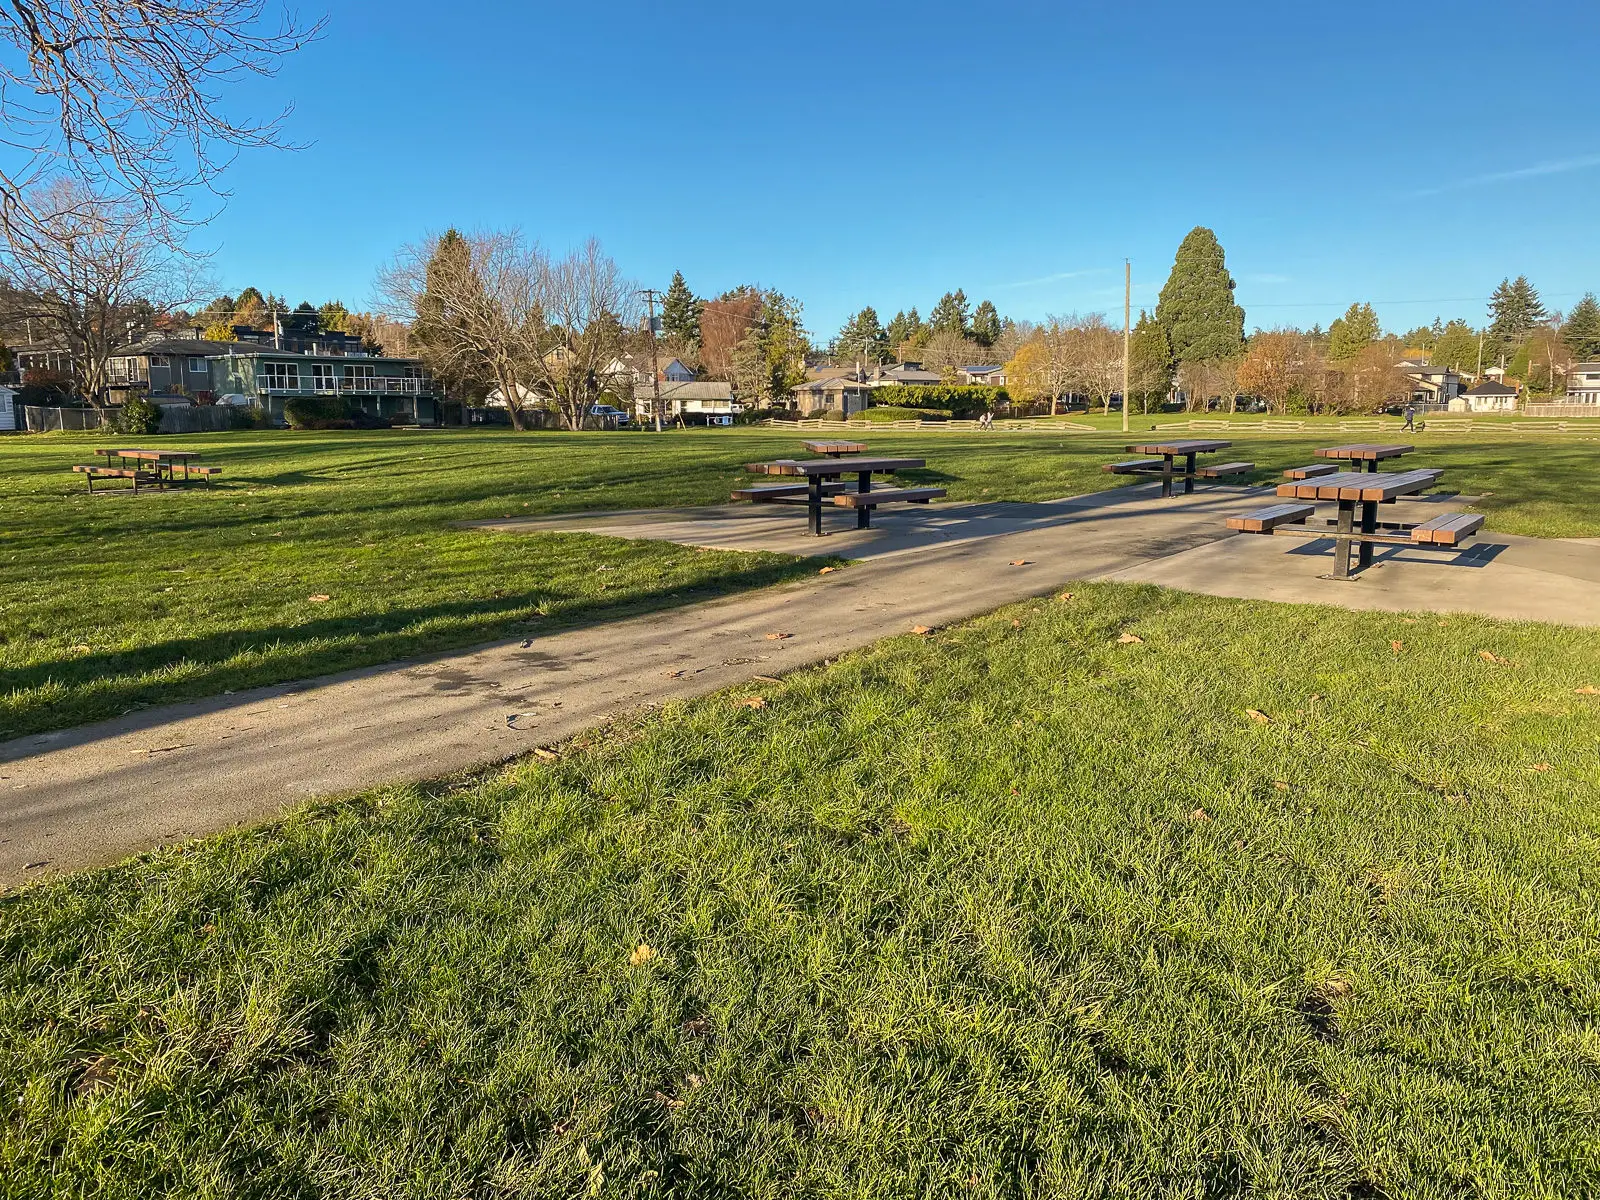 The accessible picnic tables at Cadboro-Gyro Park